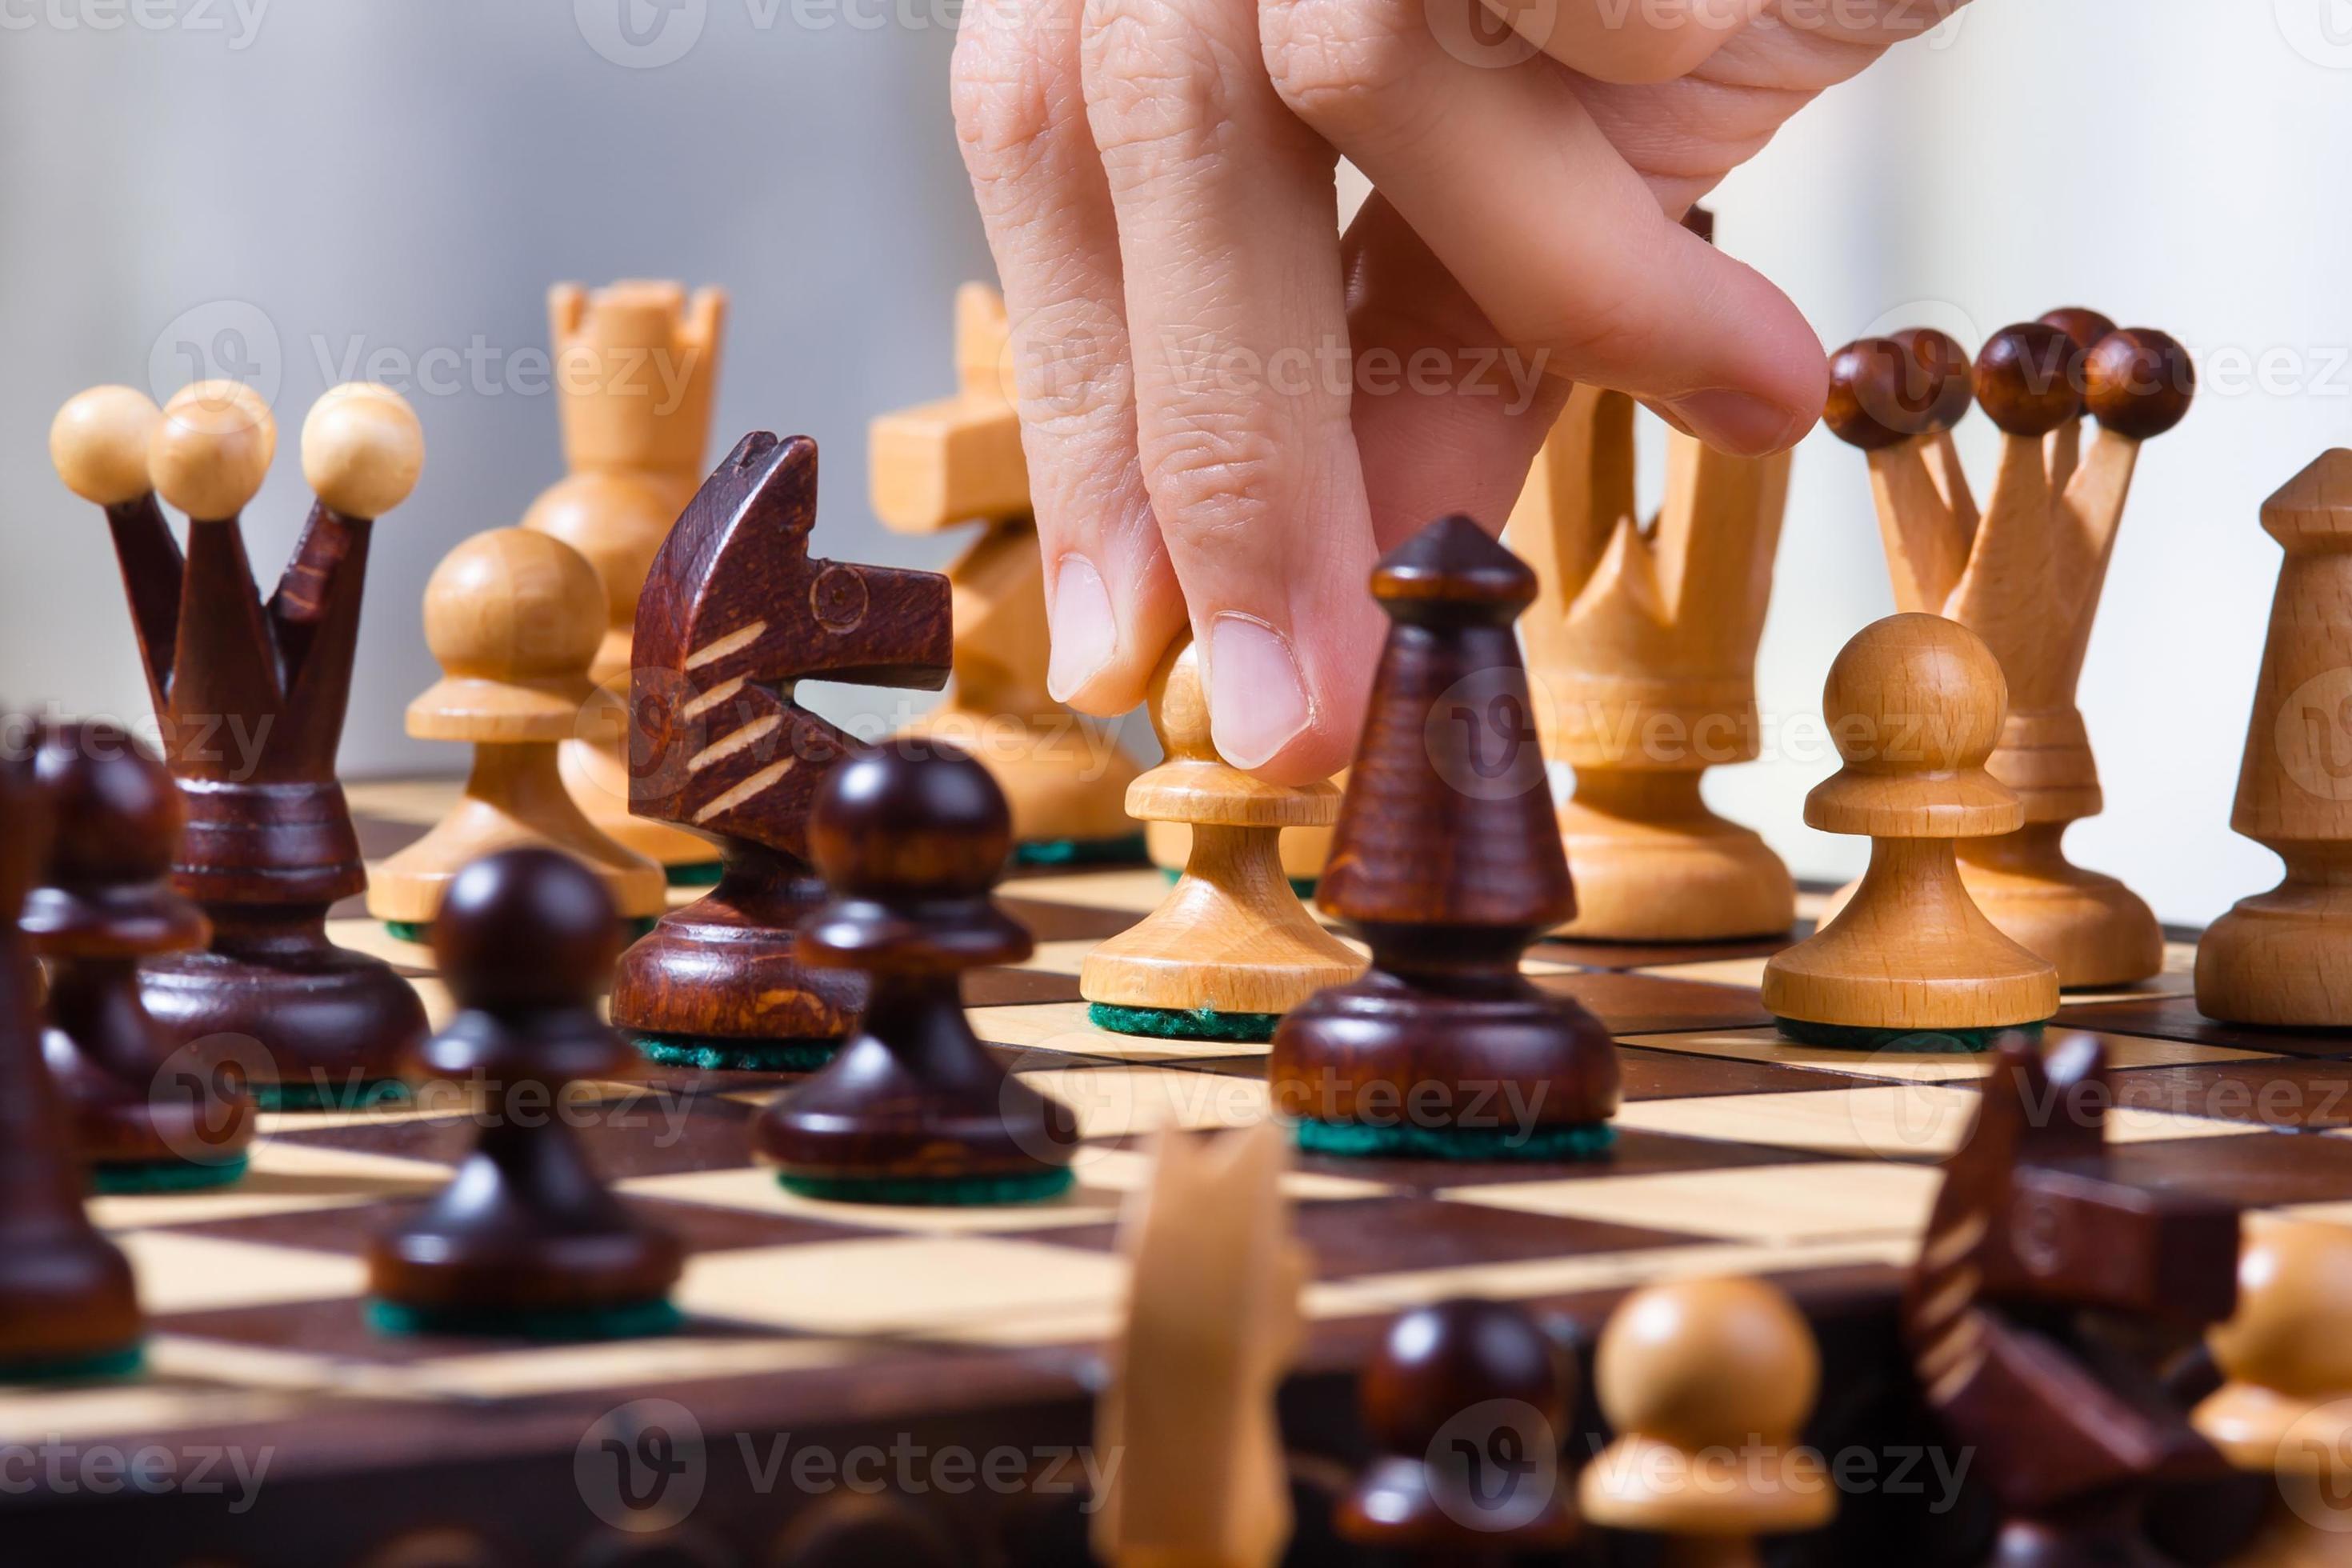 Empate do penhor da xadrez imagem de stock. Imagem de xadrez - 40654669